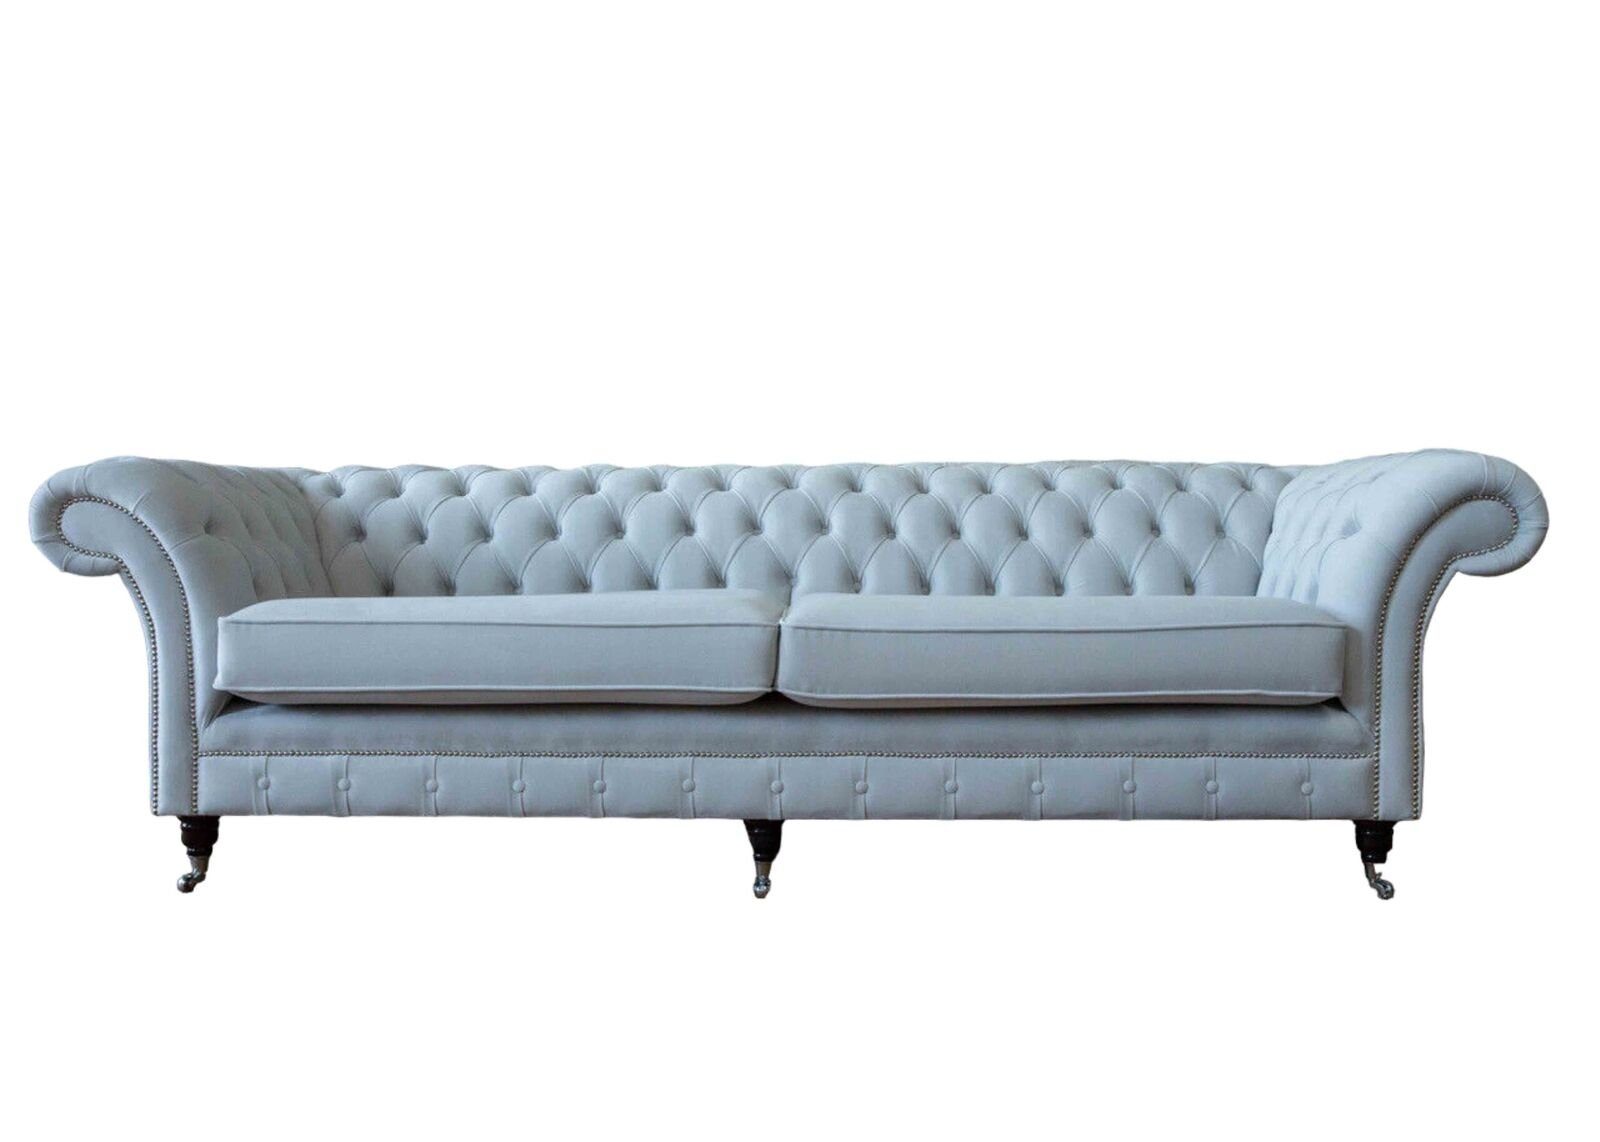 JVmoebel Sofa Wohnzimmer Sofa 4 Sitzer Luxus Designer Couch Polstersofas Modern Neu, Made In Europe